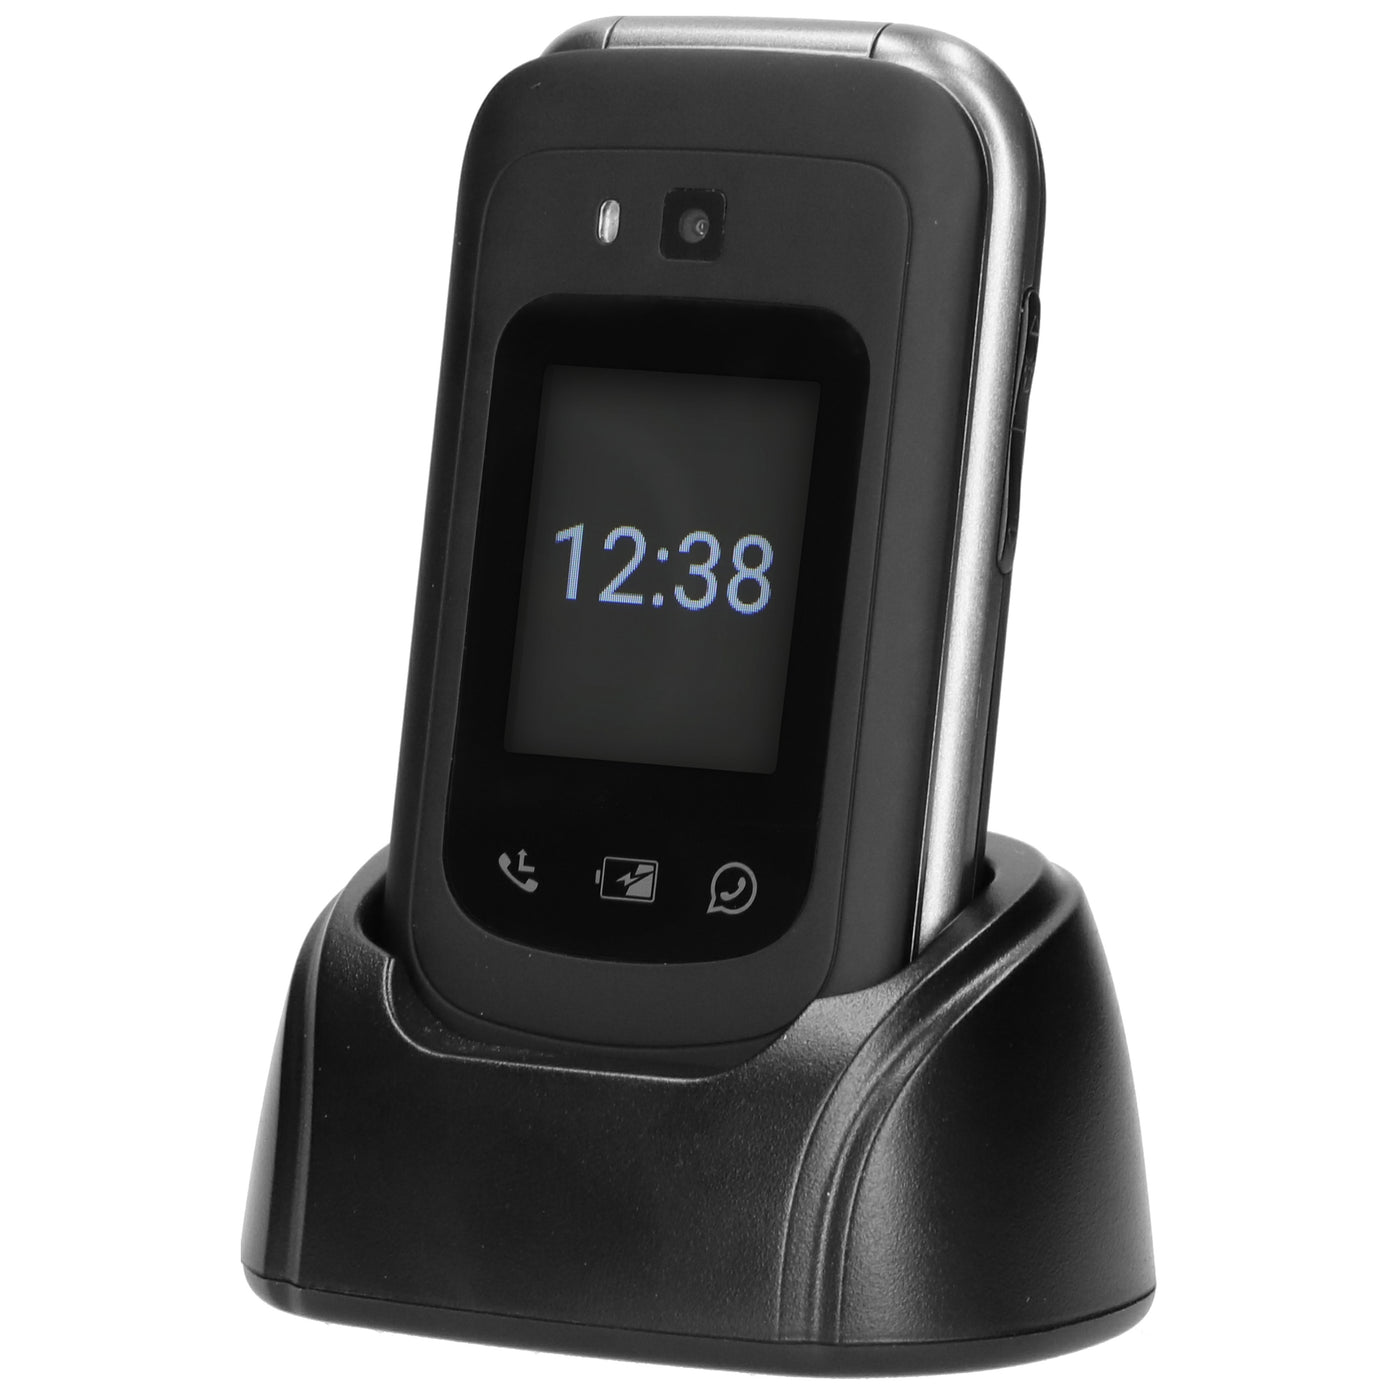 Fysic F25 - Eenvoudige 4G mobiele klaptelefoon voor senioren met SOS paniekknop